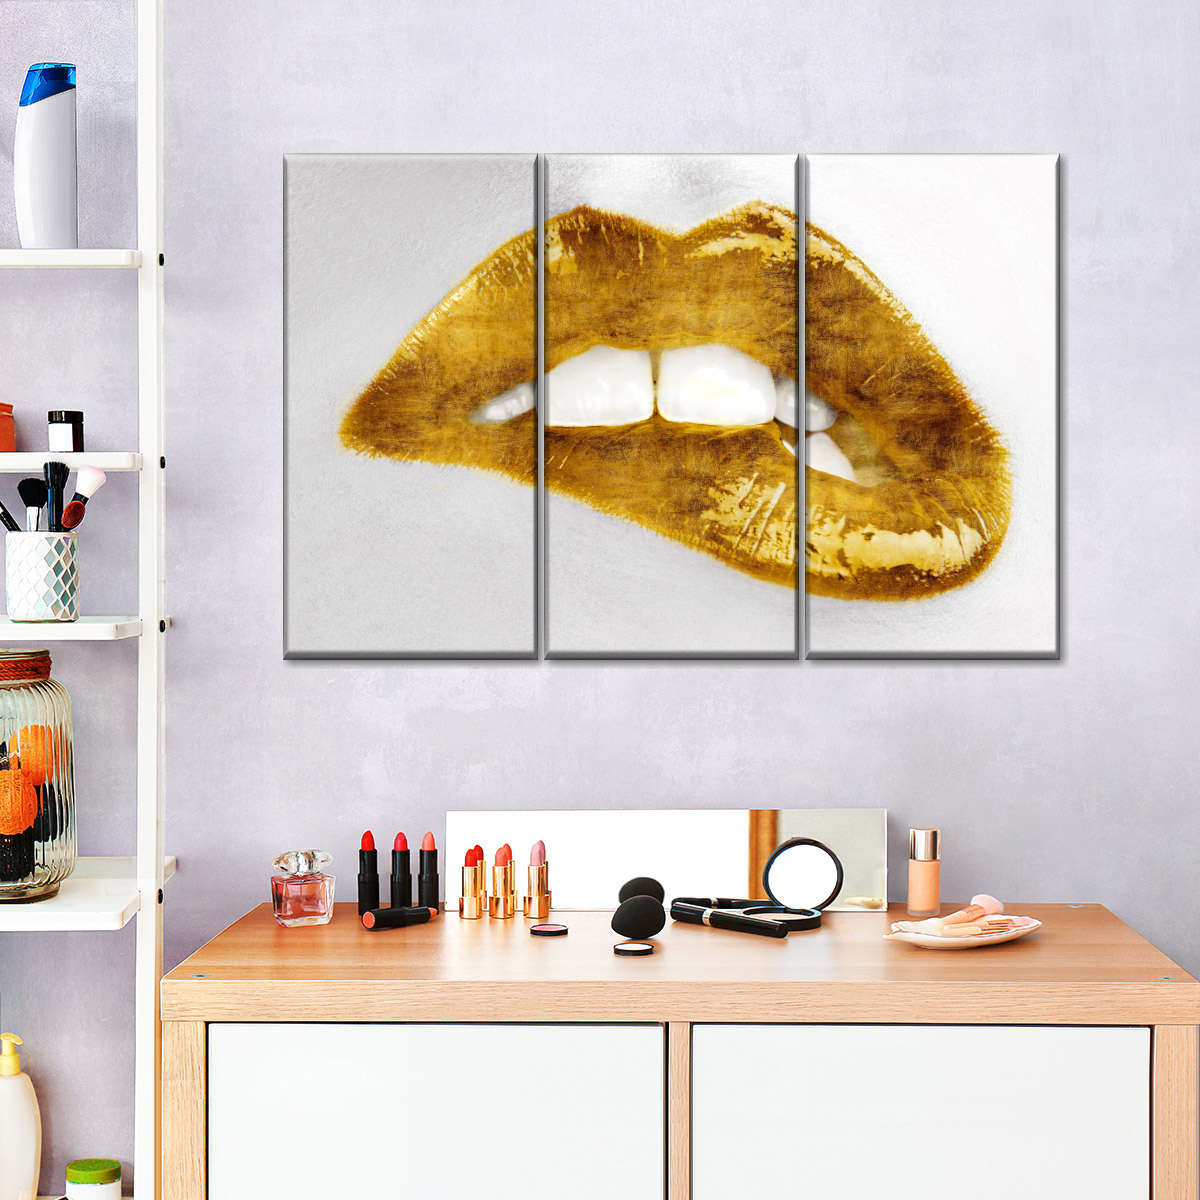 LV Lips Canvas Wall Art by Martina Pavlova